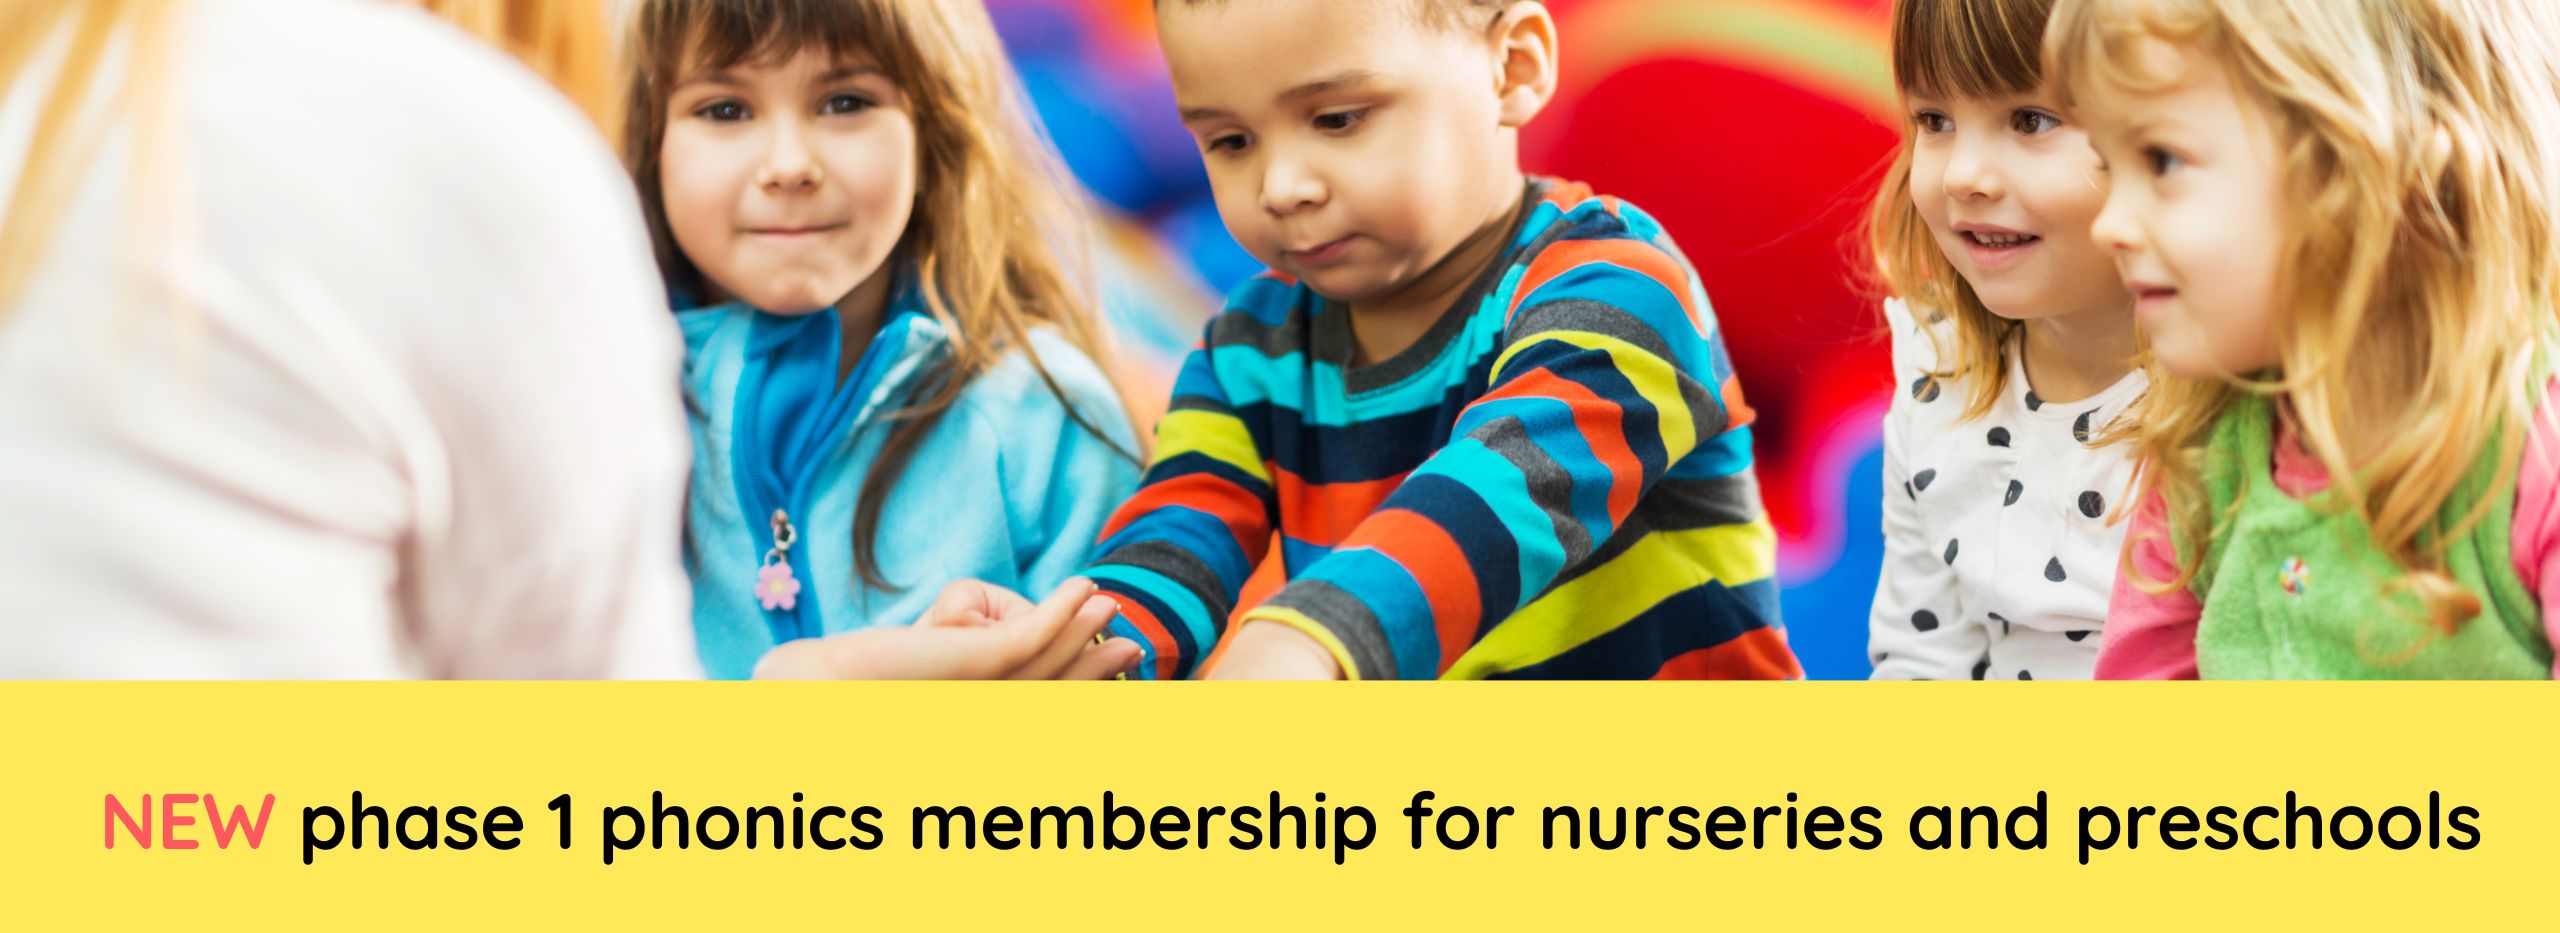 phase 1 membership nurseries preschools